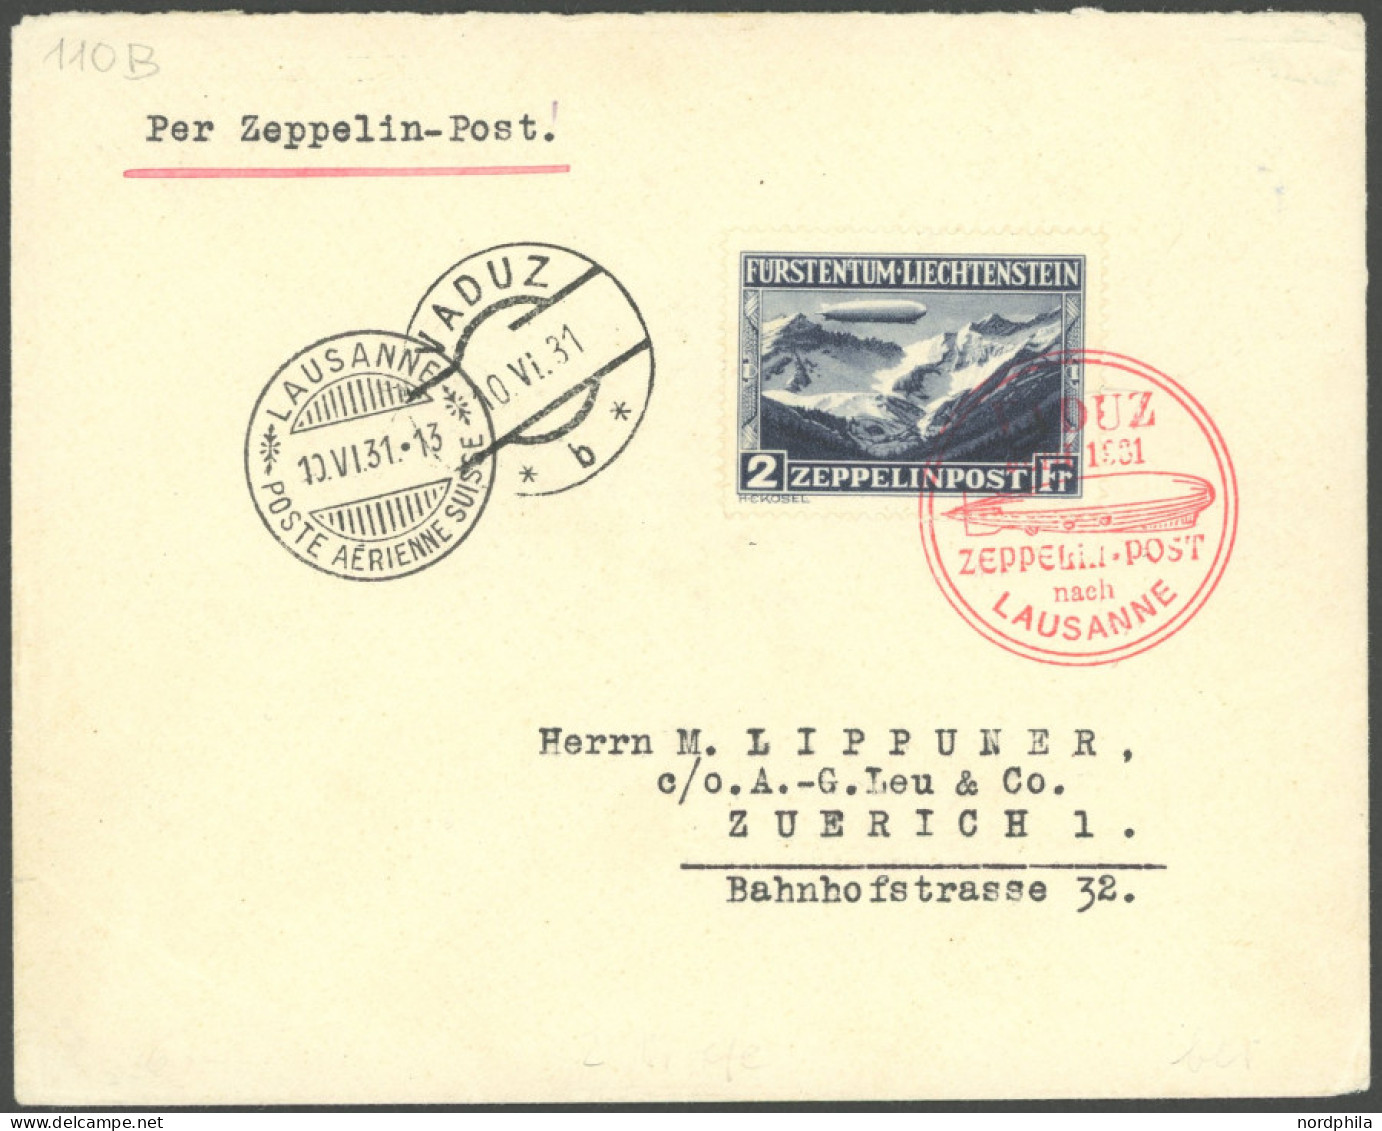 ZULEITUNGSPOST 110B BRIEF, Liechtenstein: 1931, Fahrt Nach Vaduz, Frankiert Mit Sondermarke 2 Fr., Prachtbrief - Airmail & Zeppelin